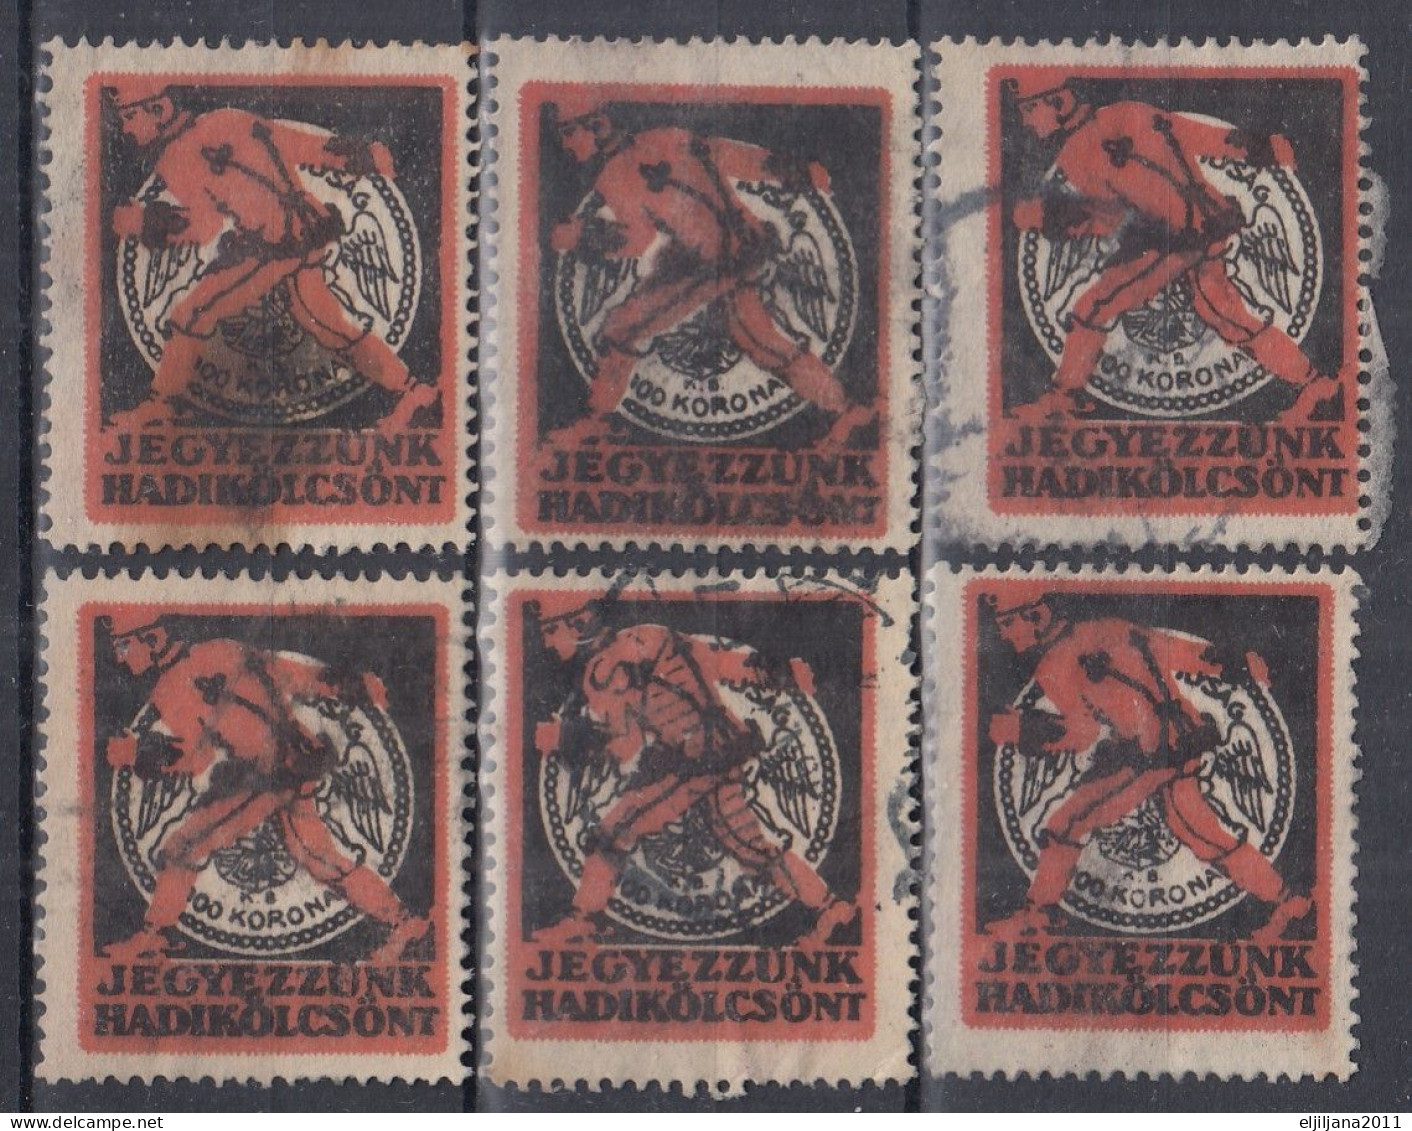 Hungary WWI ⁕ Jegyezzunk Hadikölcsönt / War Loan 100 Korona, Poster - Label - Vignette ⁕ 6v Cinderella Stamp - Erinnophilie